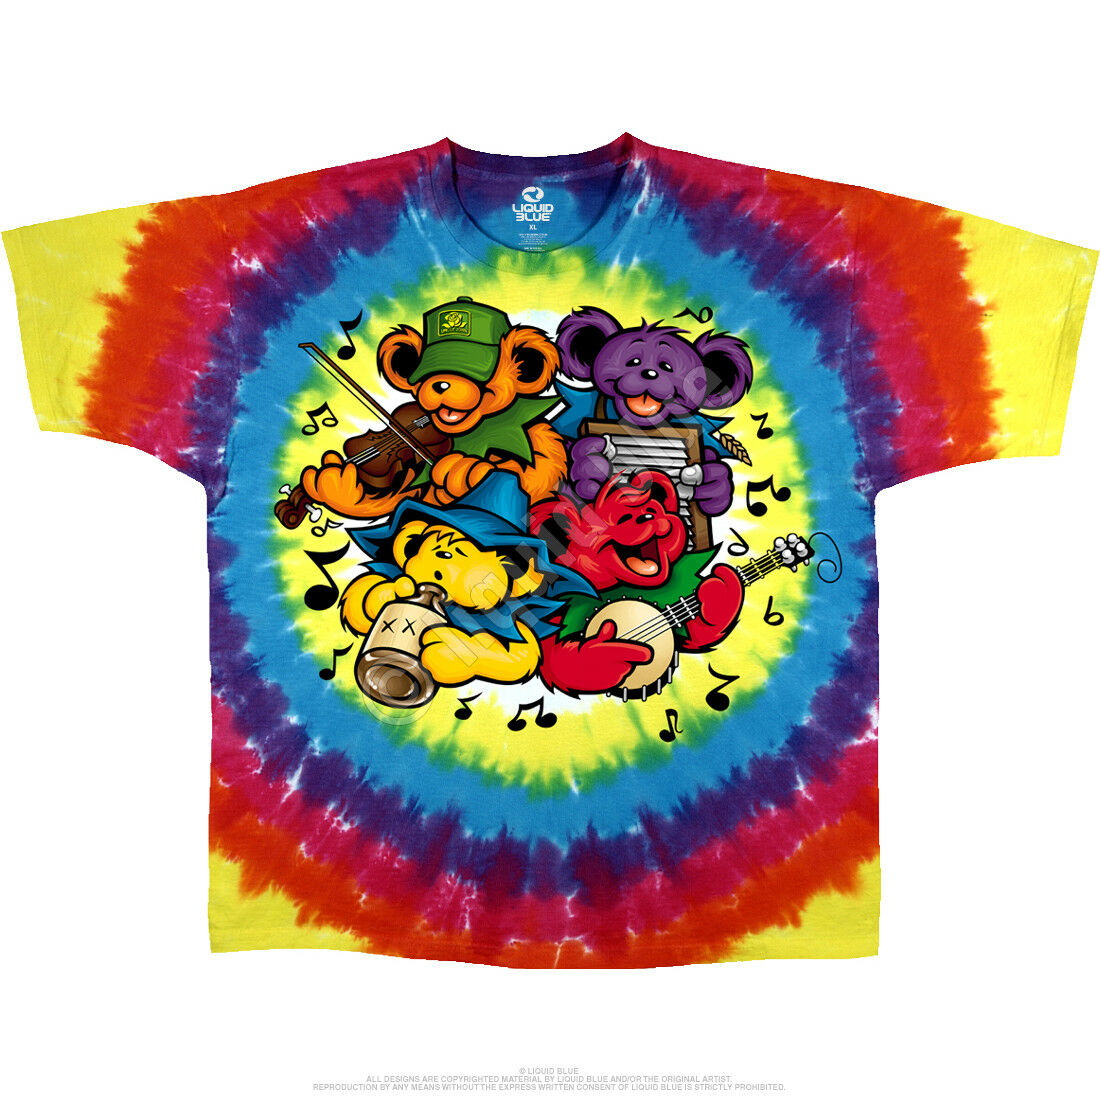 Grateful Dead Bear Jamboree 2 Sided Tie Dye Tshirt M L Xl Xxl 3x 4x 5x 6x 7x 8x Xetsy